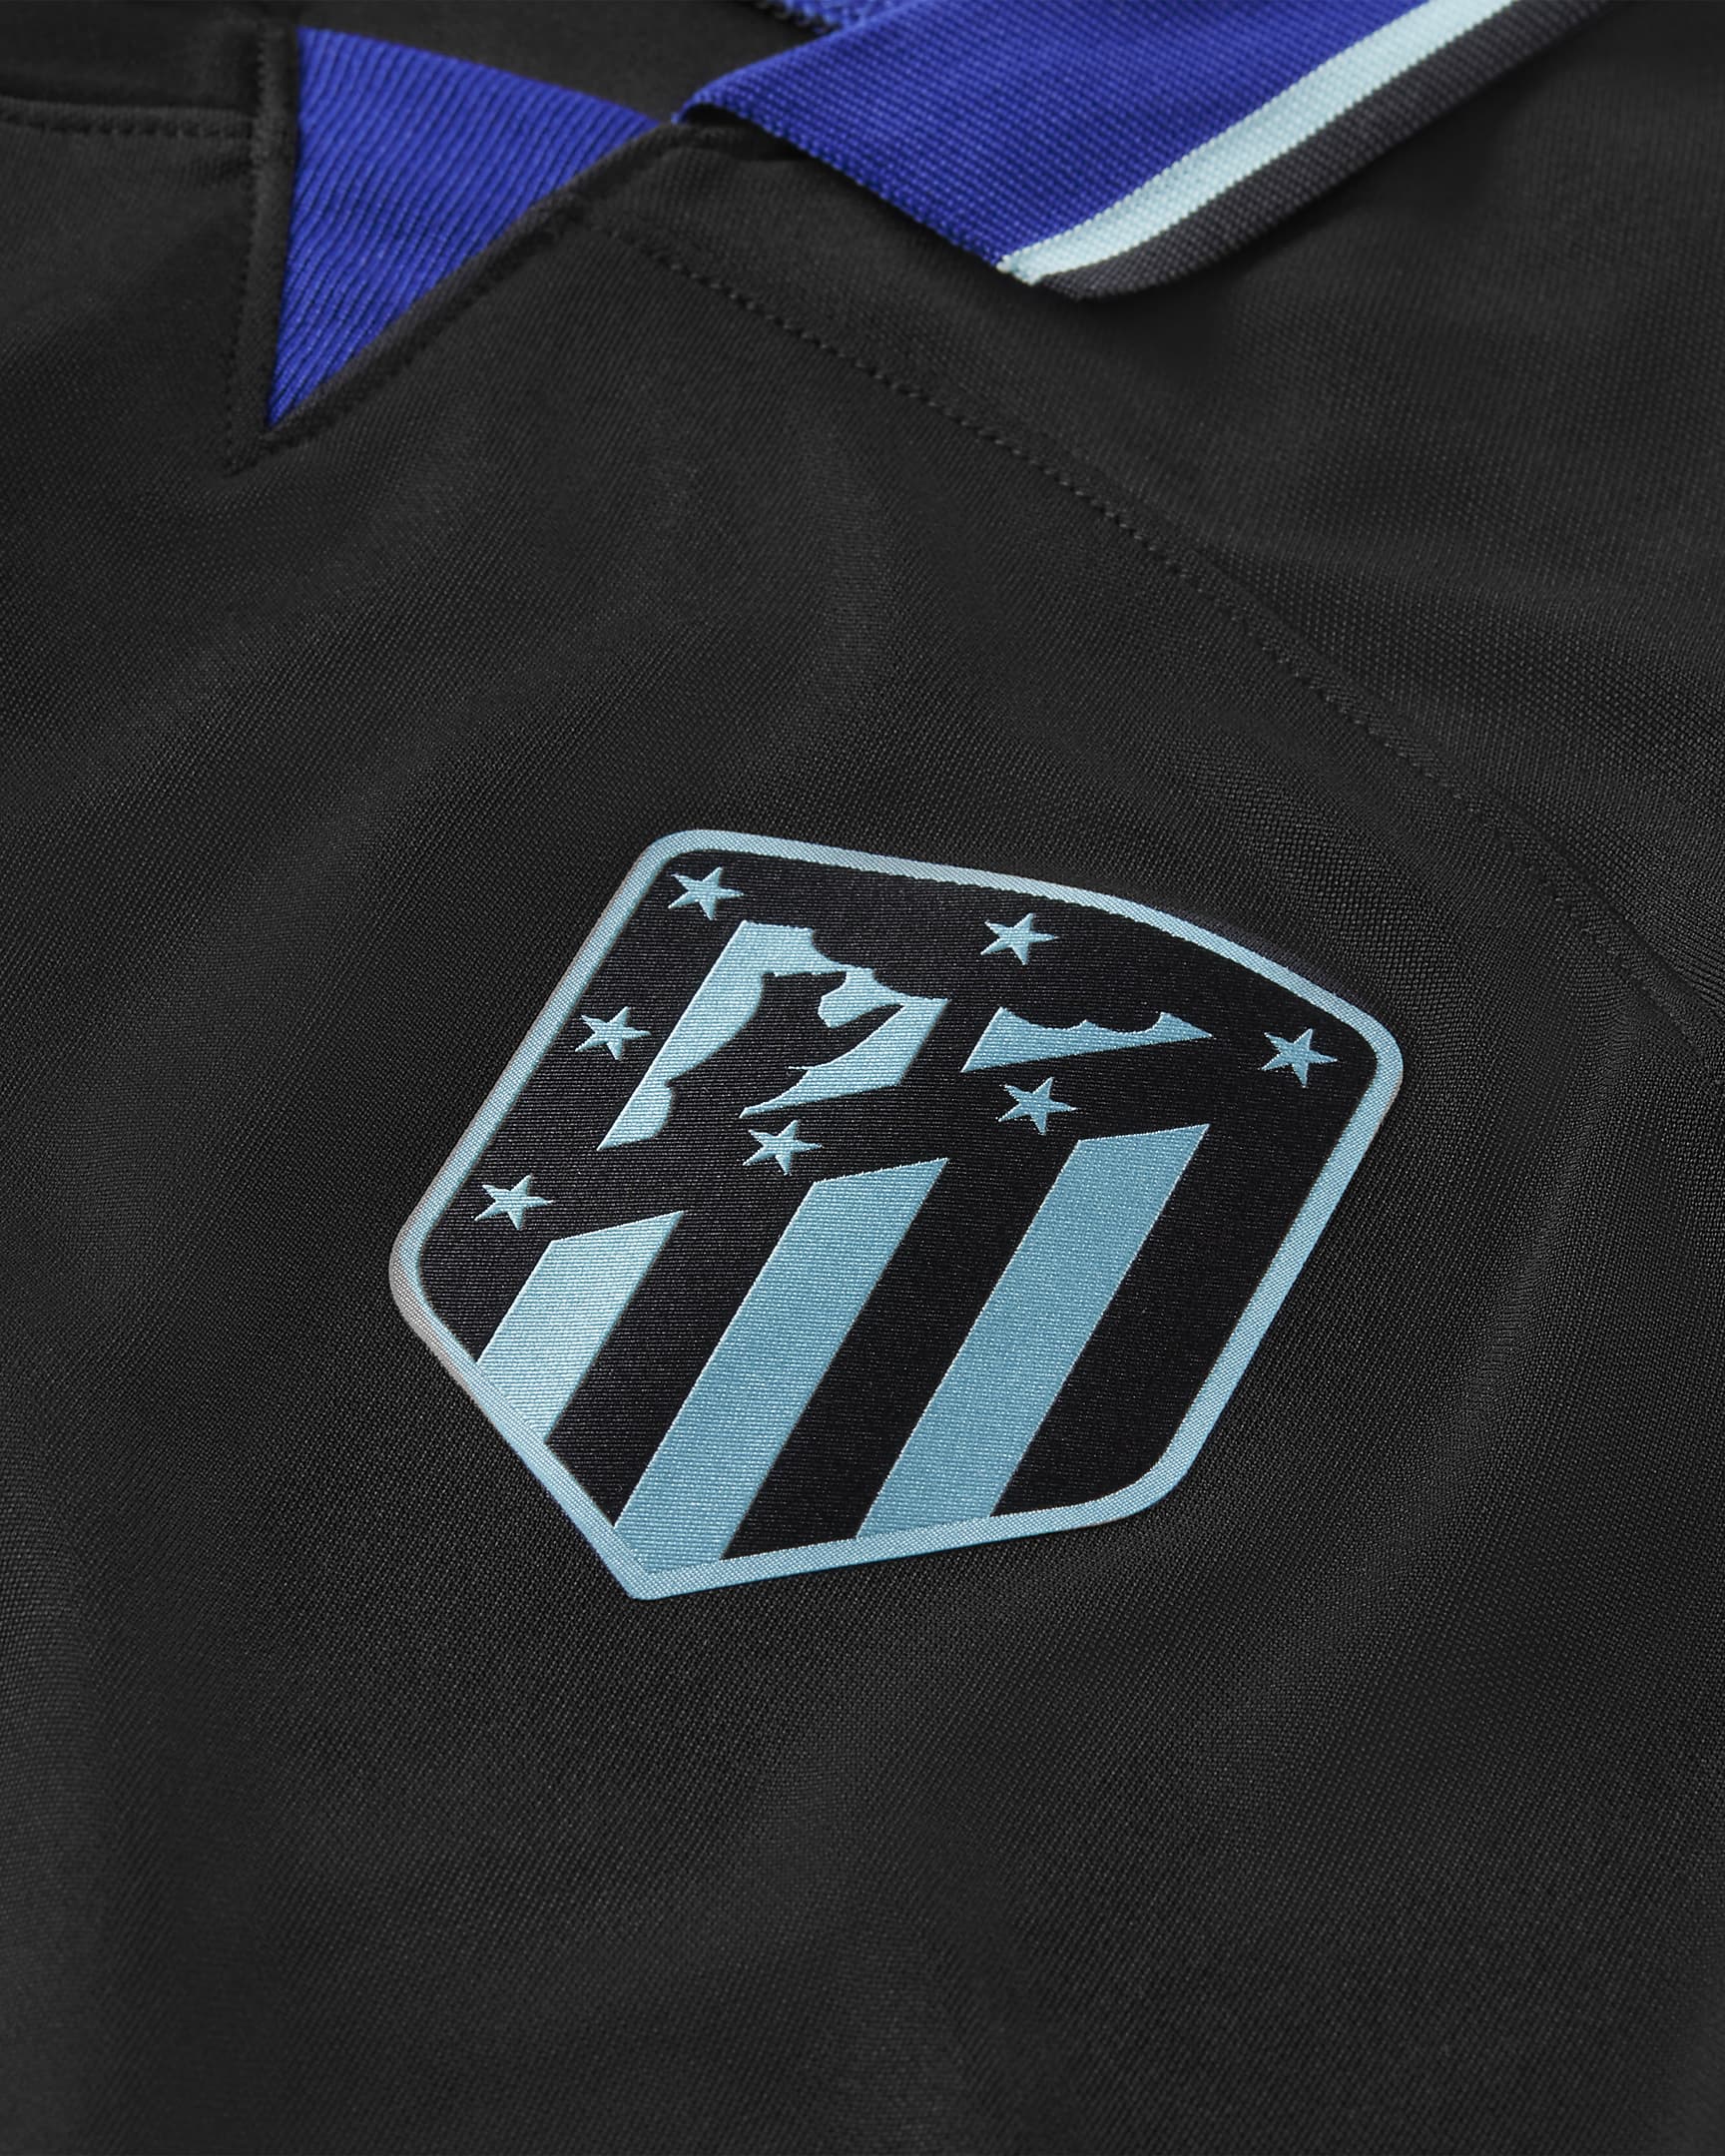 Honduras soccer jersey 24-25